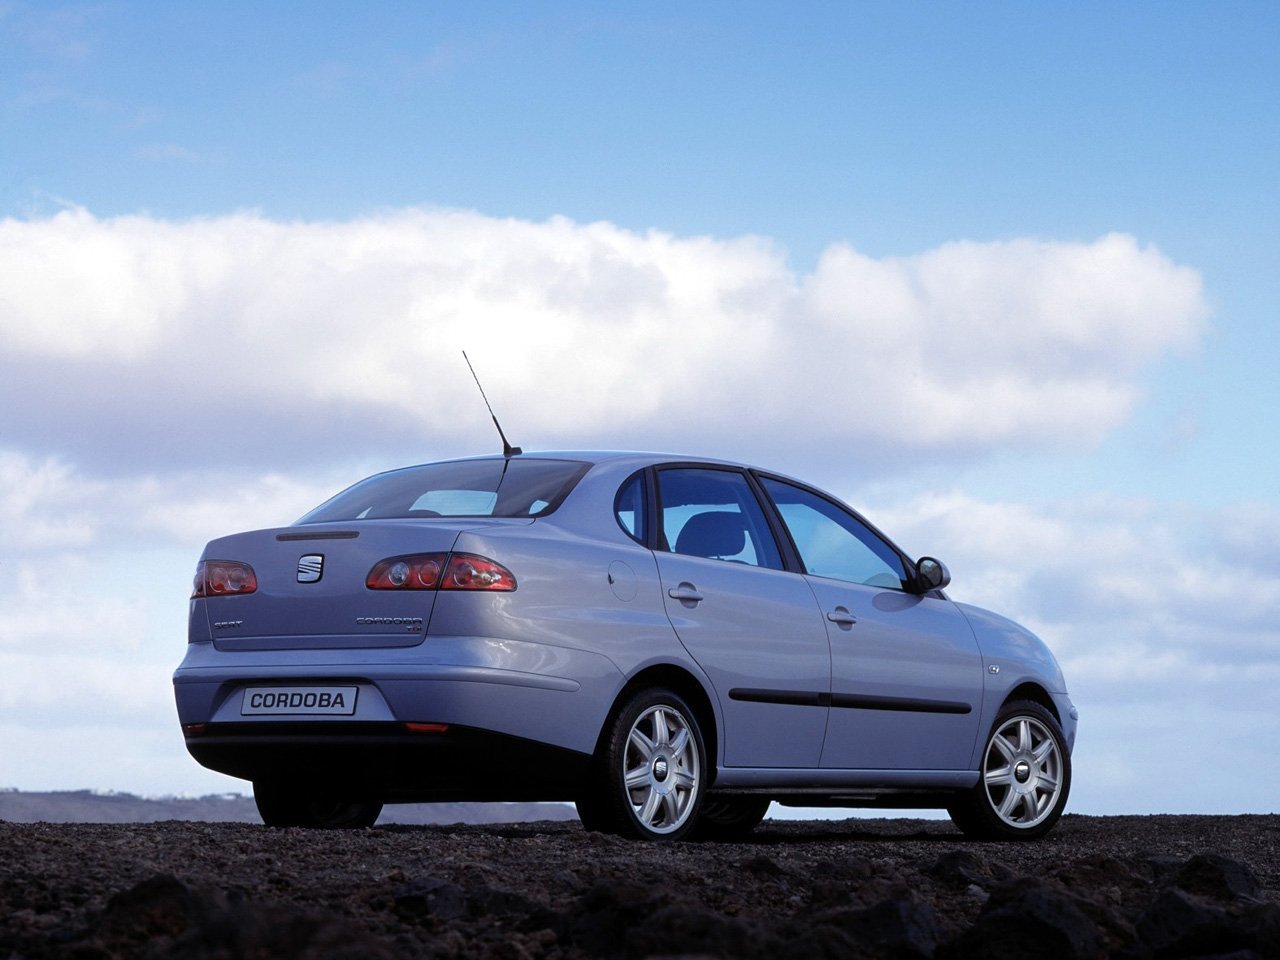 седан SEAT Cordoba 2002 - 2006г выпуска модификация 1.2 MT (64 л.с.)